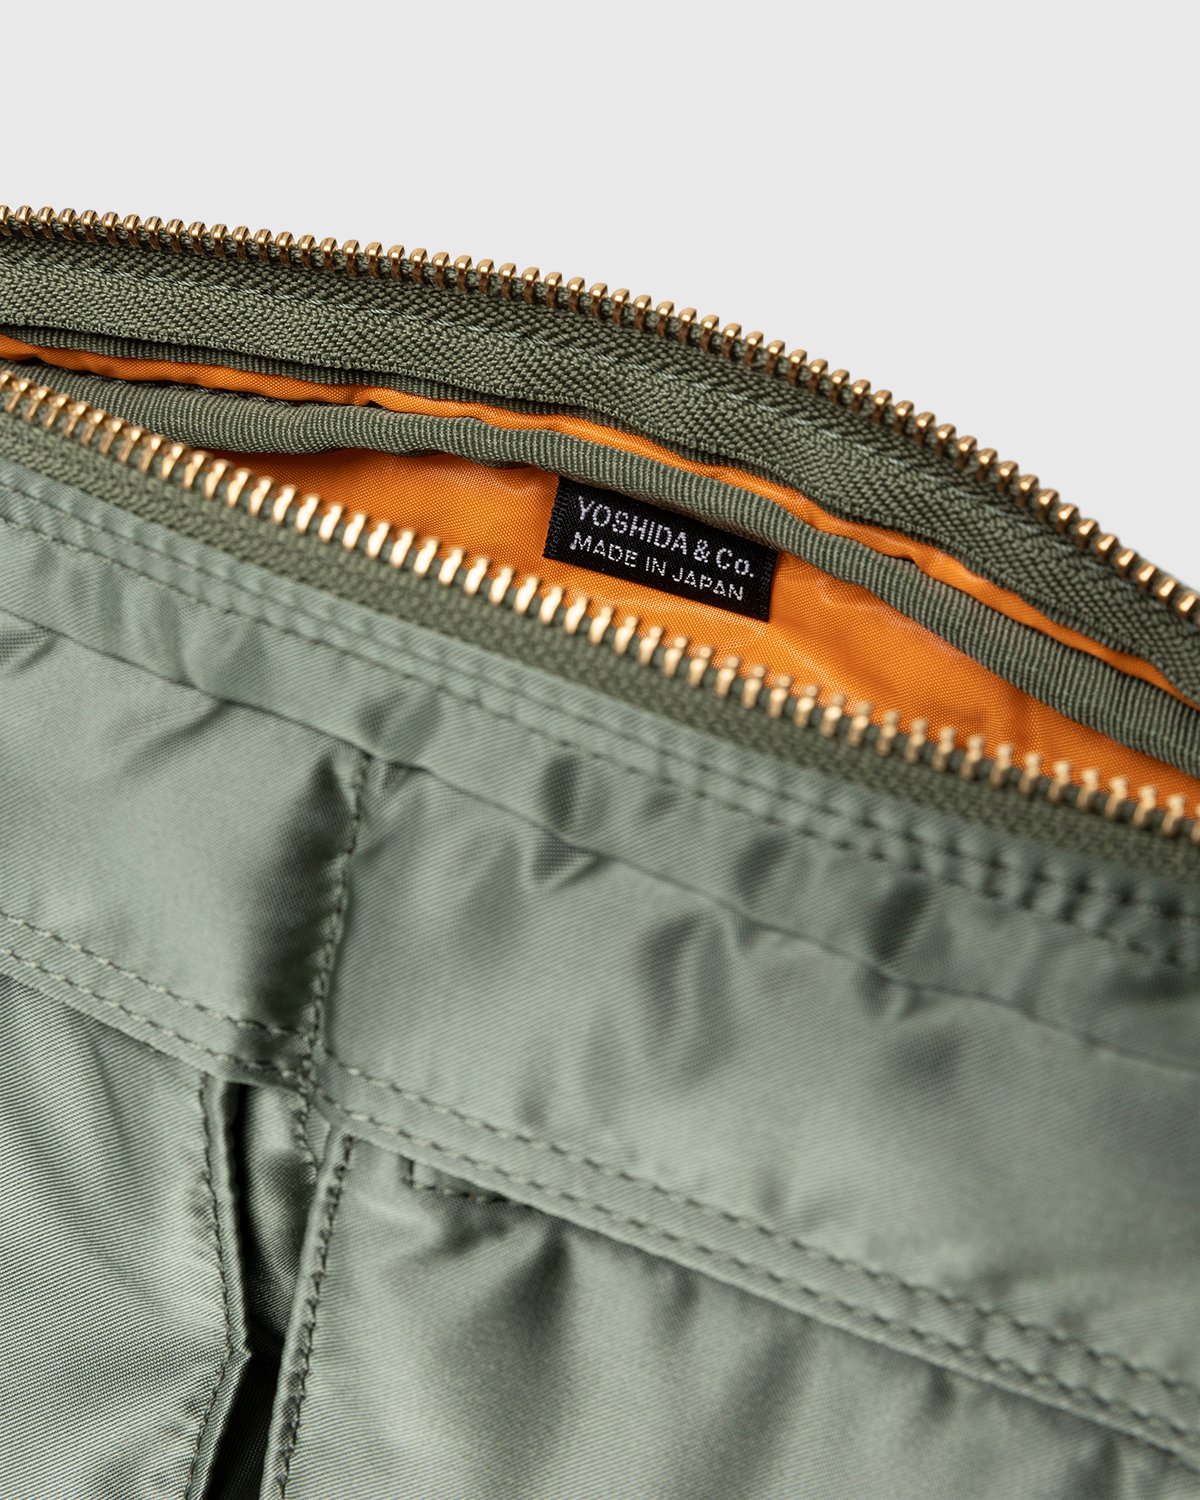 Porter-Yoshida & Co. - Tanker Shoulder Bag Sage Green - Accessories - Green - Image 5